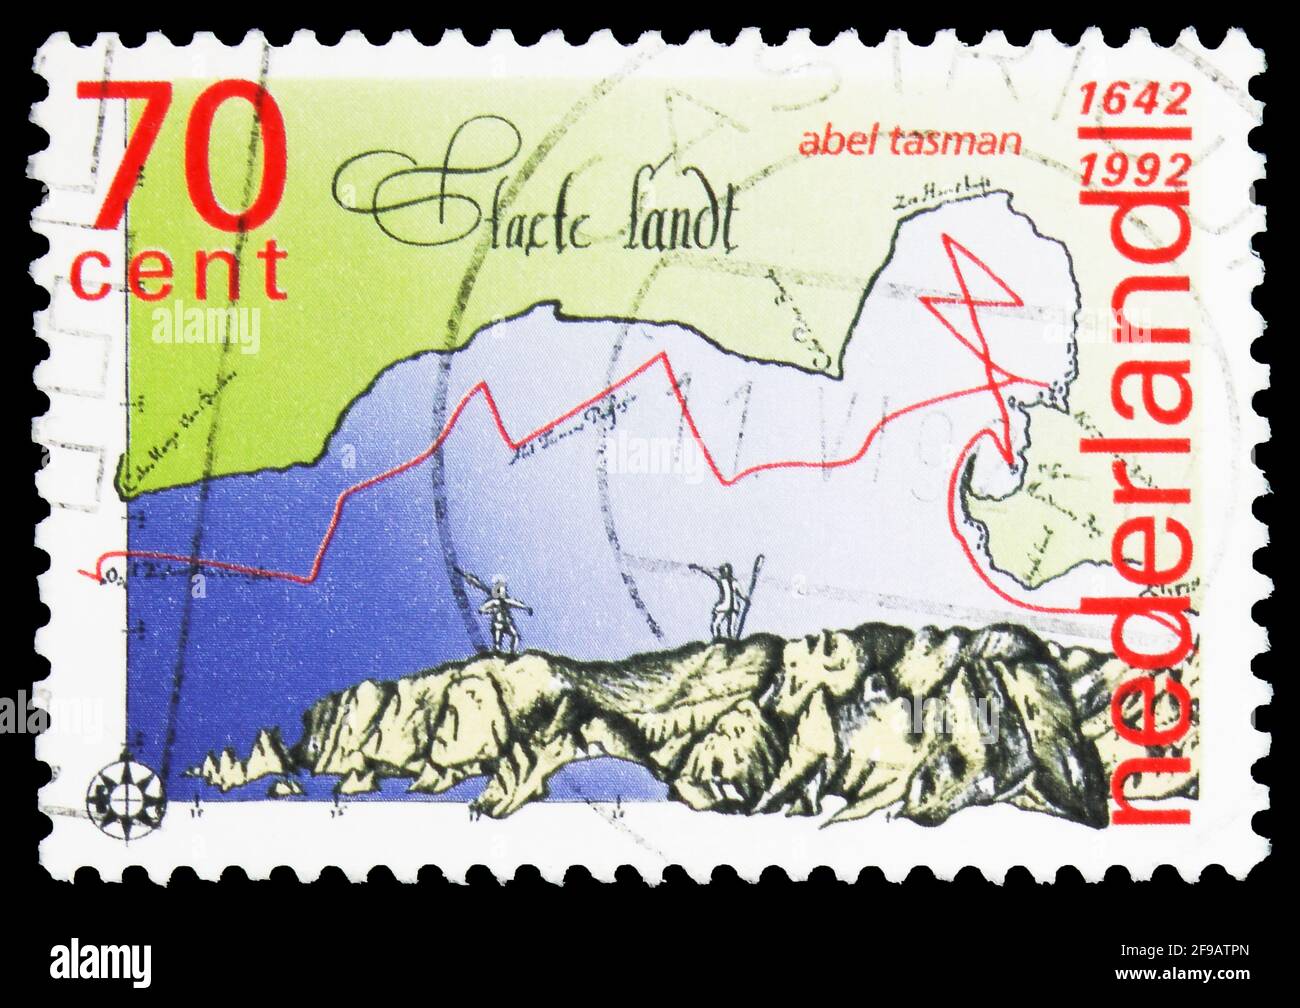 Карта 1992. Почтовые марки Нидерландов. Австралия марки Тасман. Почтовая марка 65 центов. Марки новая Зеландия 1974.